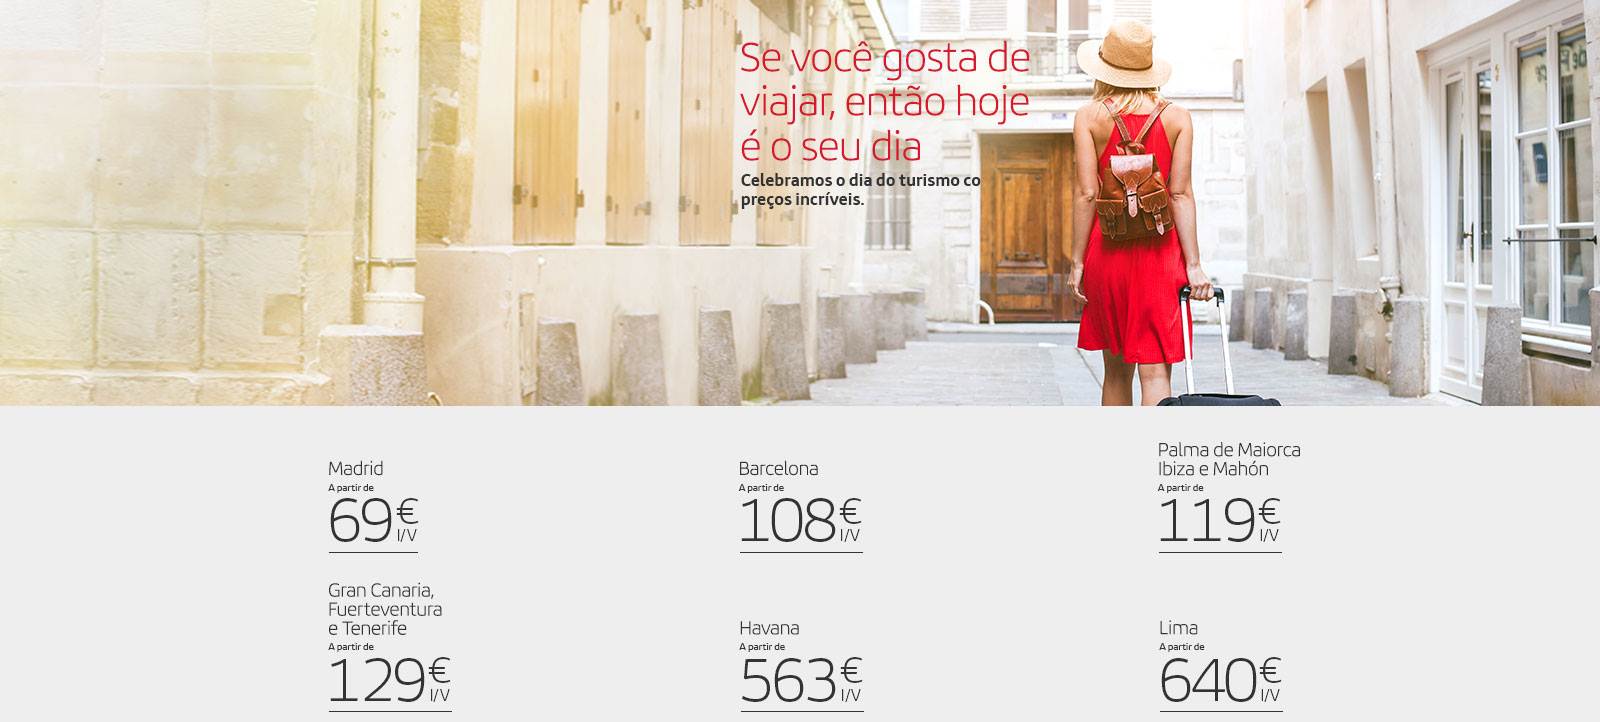 Promoções da Iberia para o Dia do Turismo